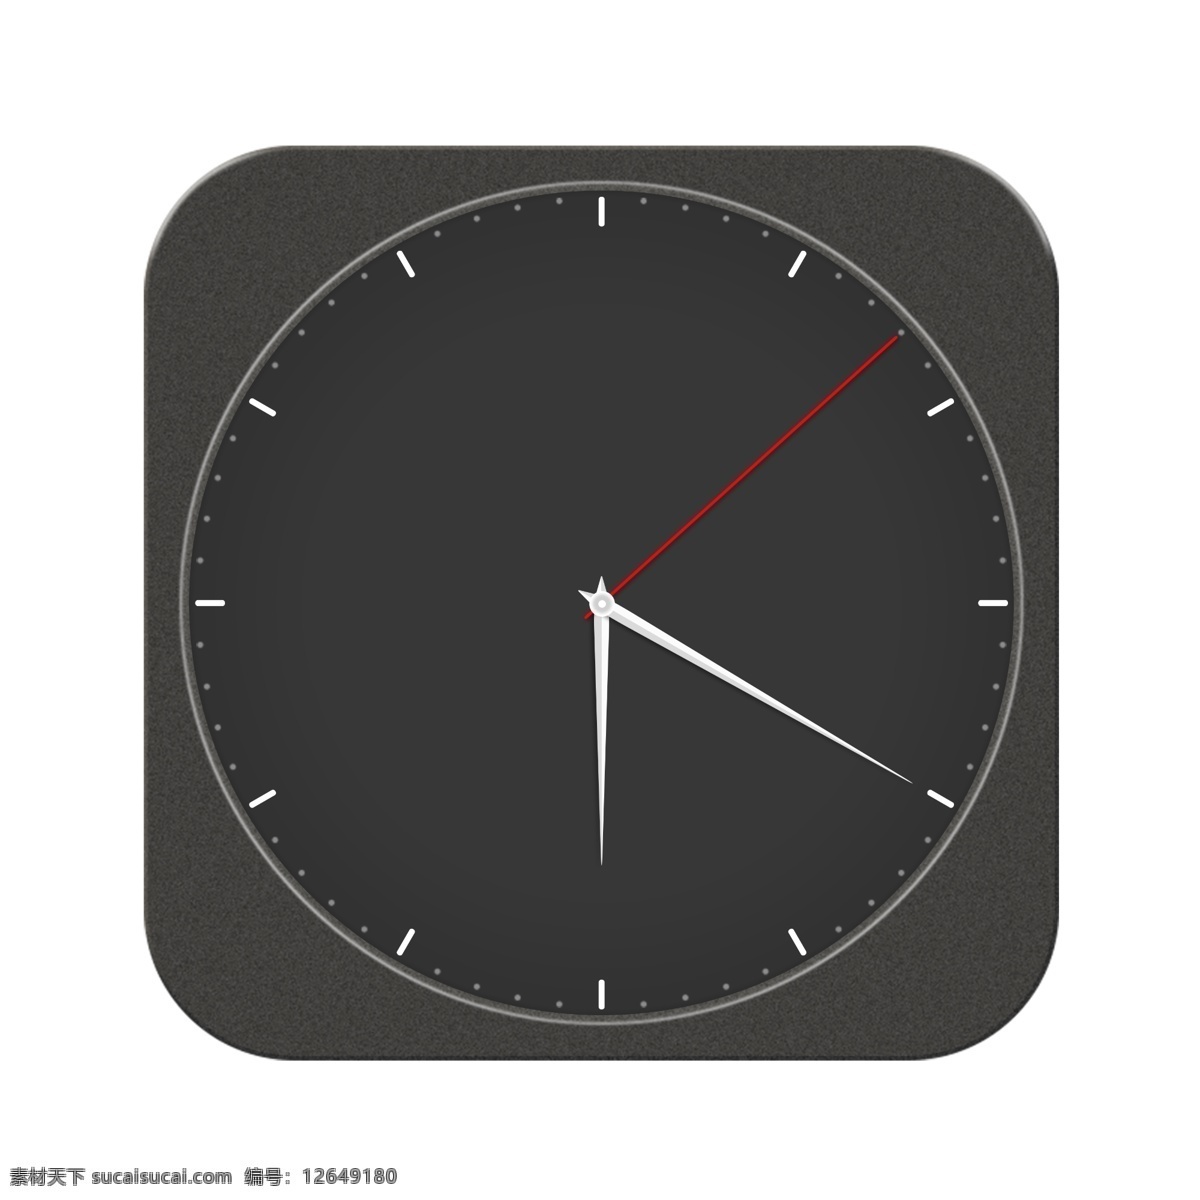 时钟表图片 时钟表 表 钟 挂钟 时间钟 挂表 家用钟表 装饰钟表 分层